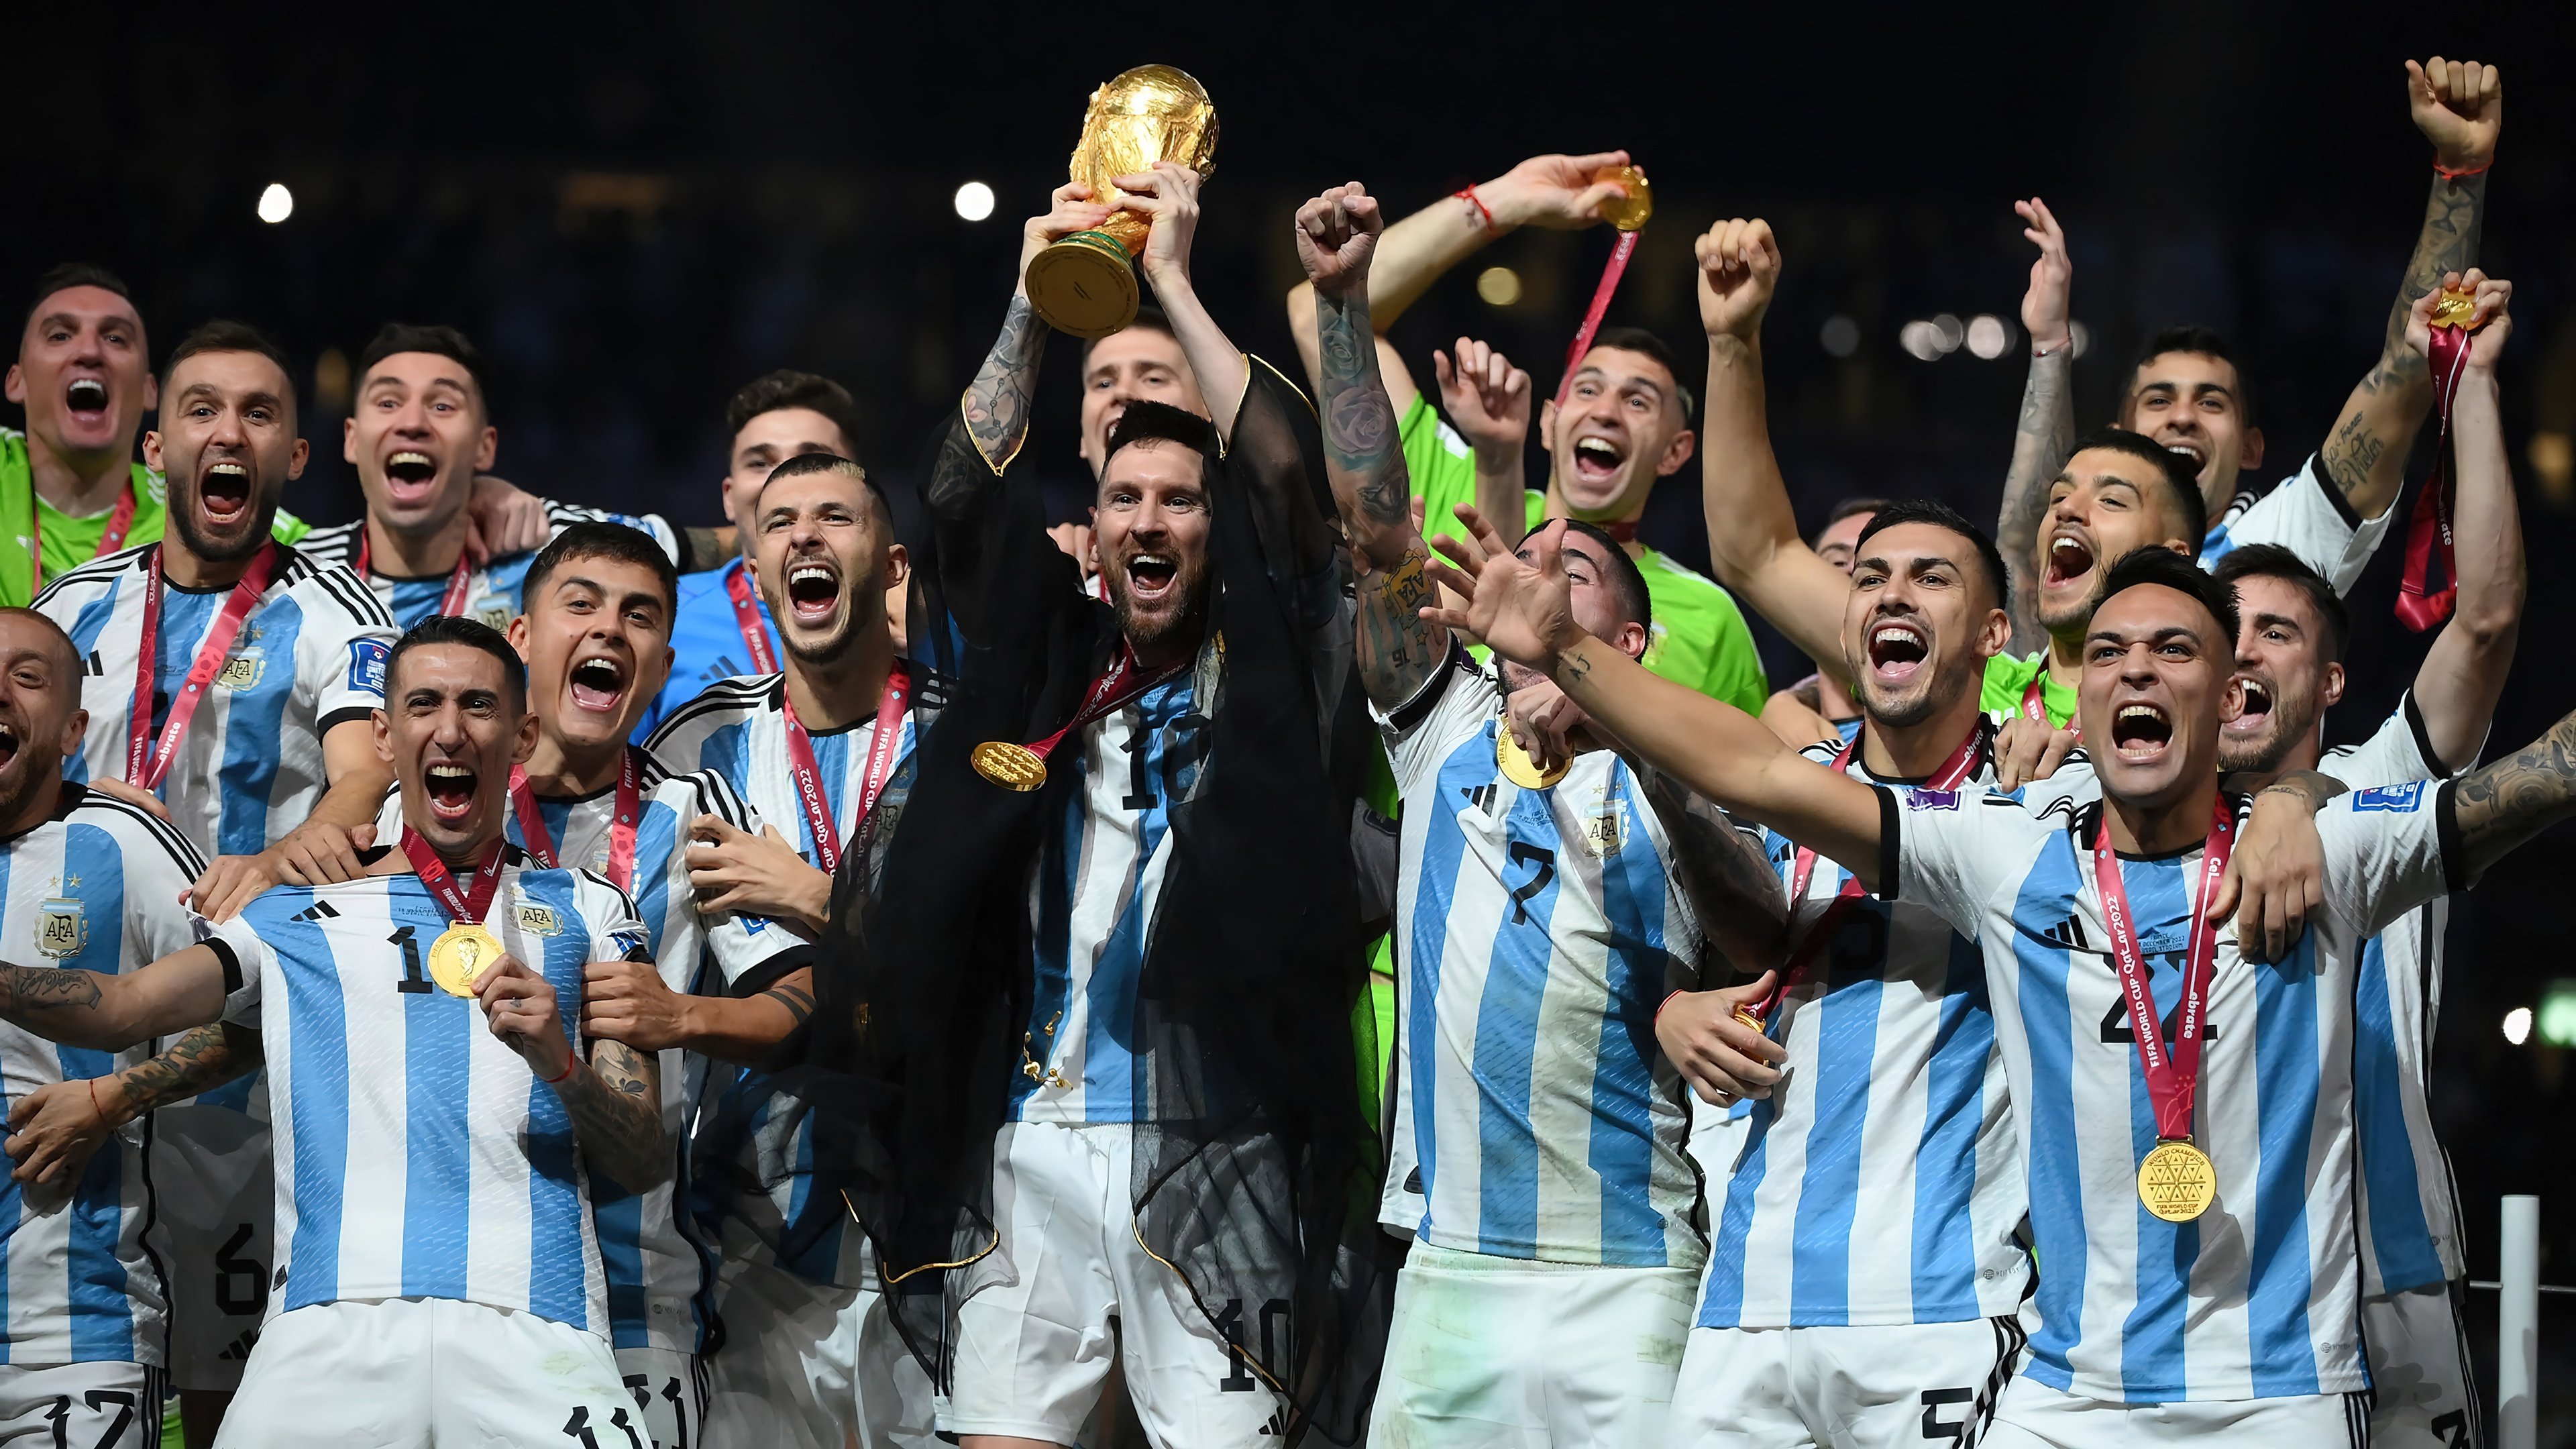 Fondos de pantalla Selección Argentina con trofeo Copa Mundial FIFA